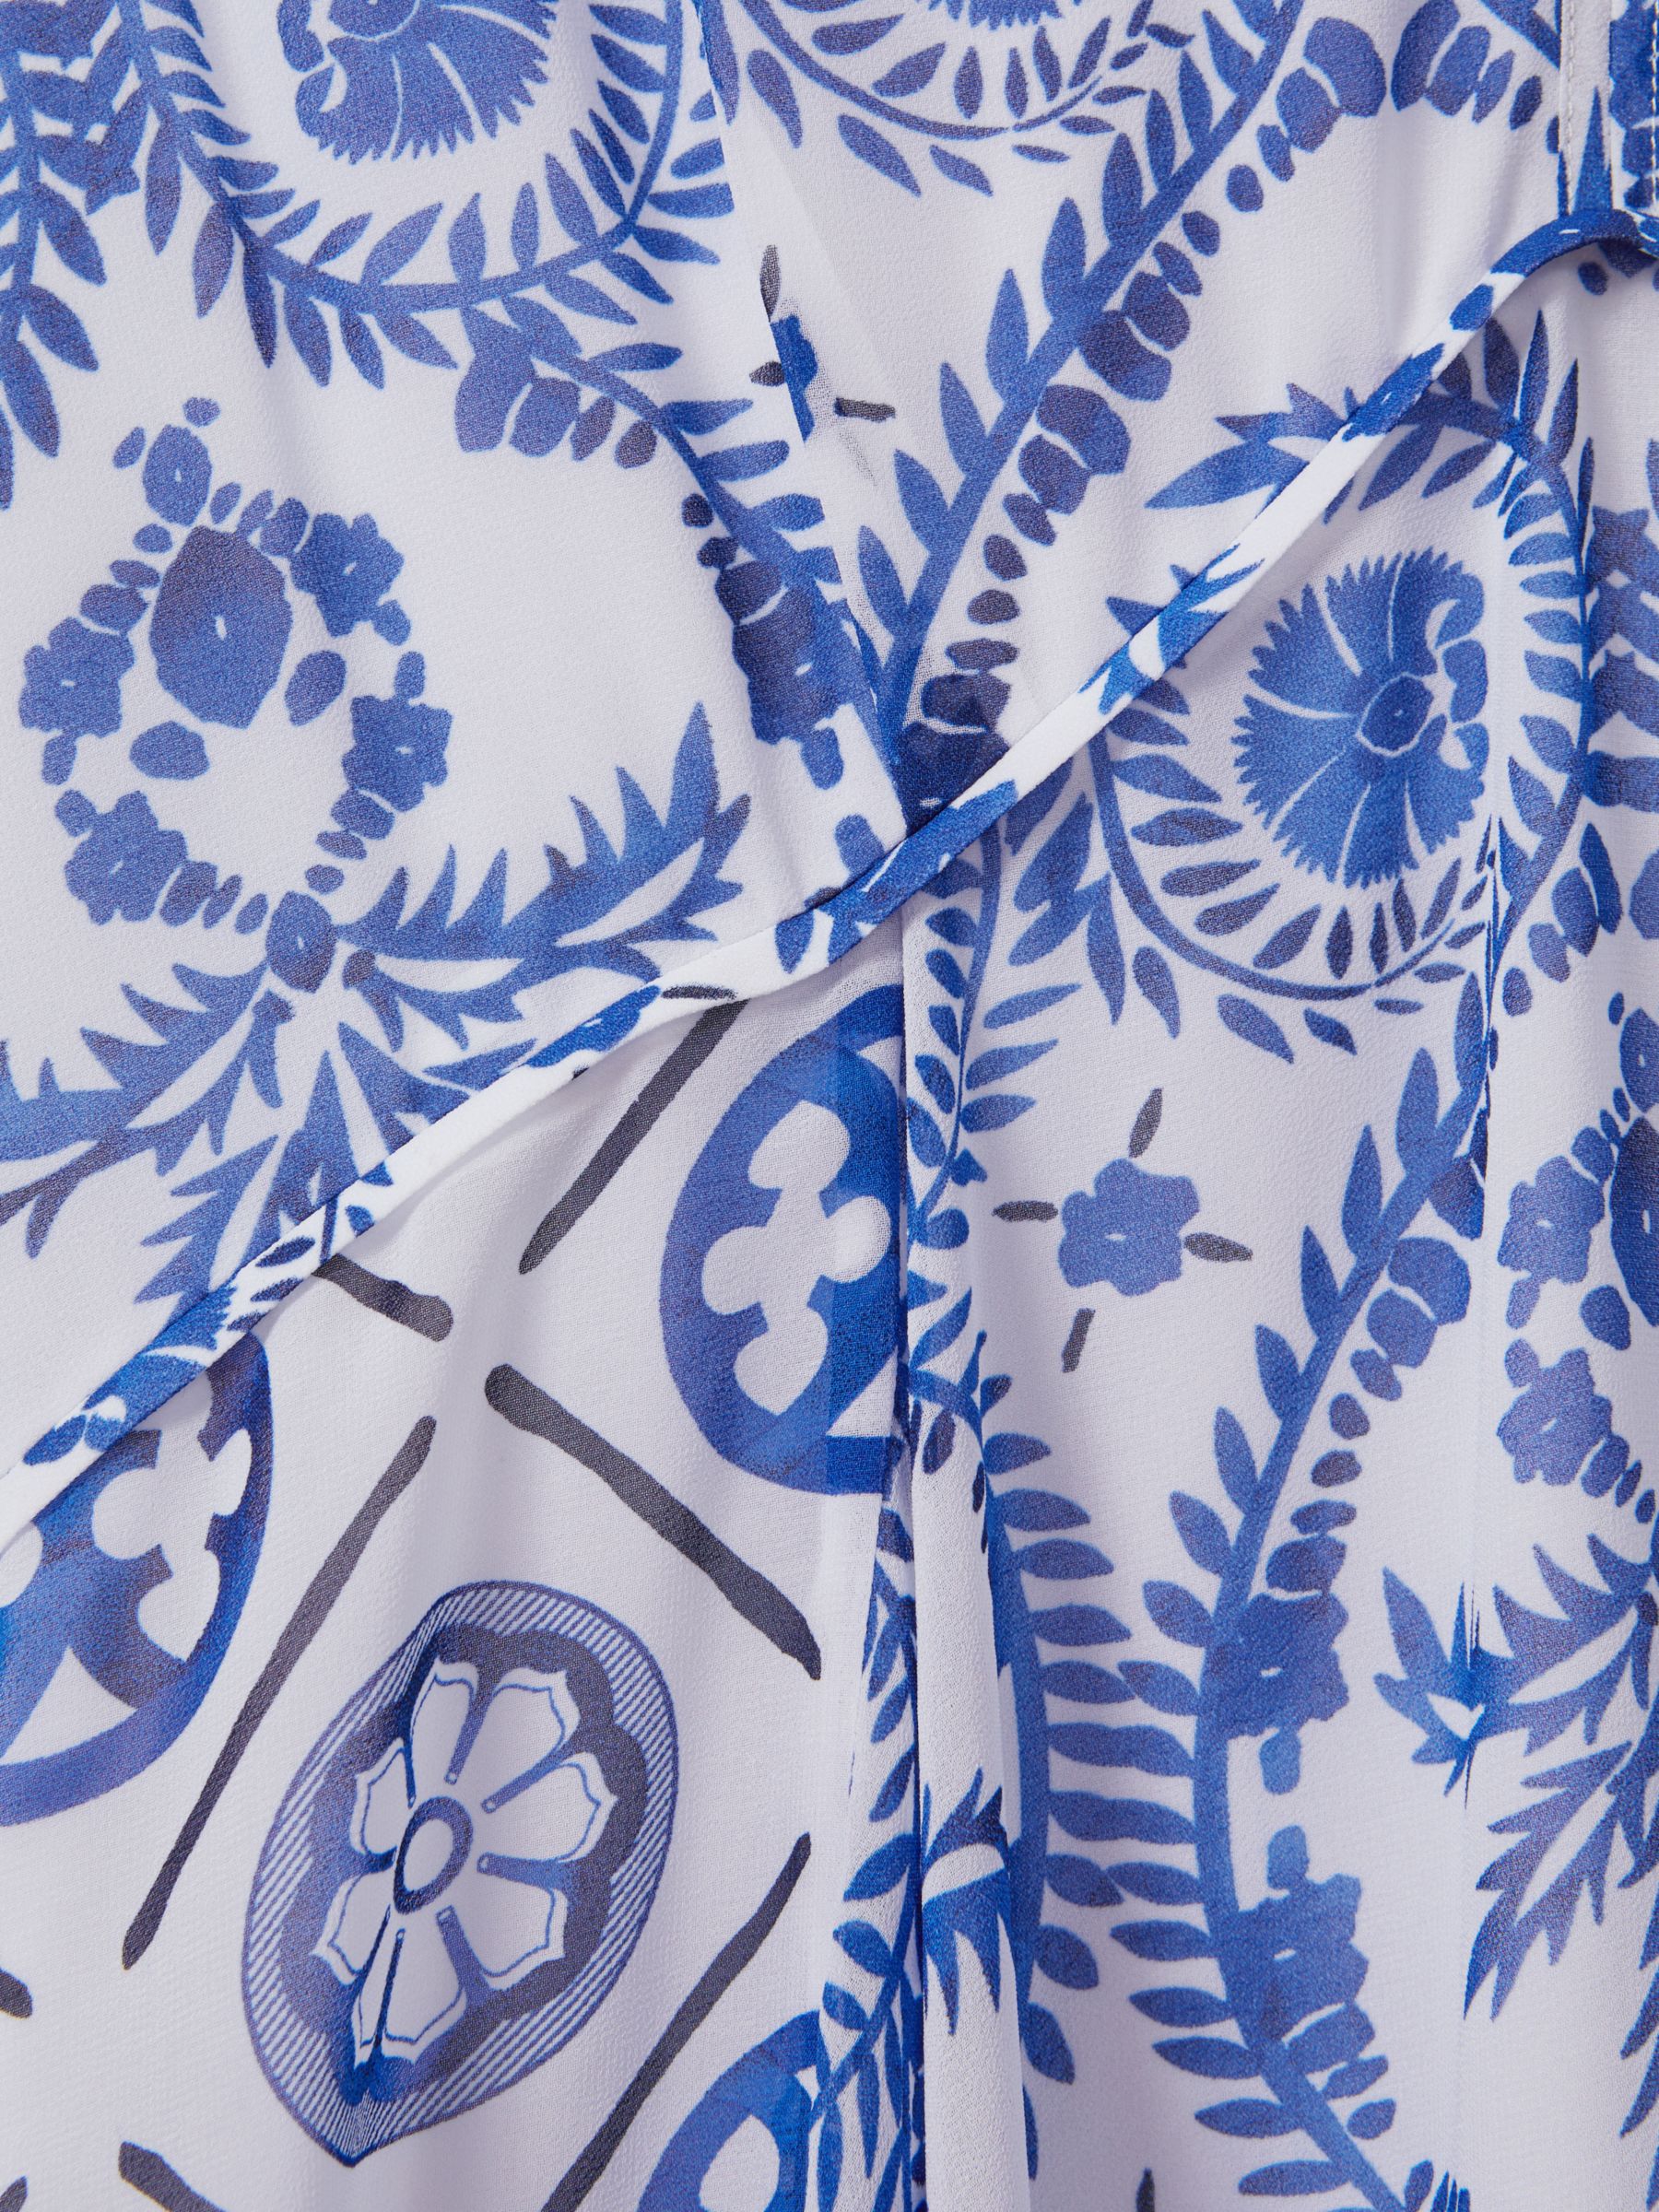 Reiss Tiller Tile Print Halterneck Midi Dress, Blue/White, 6